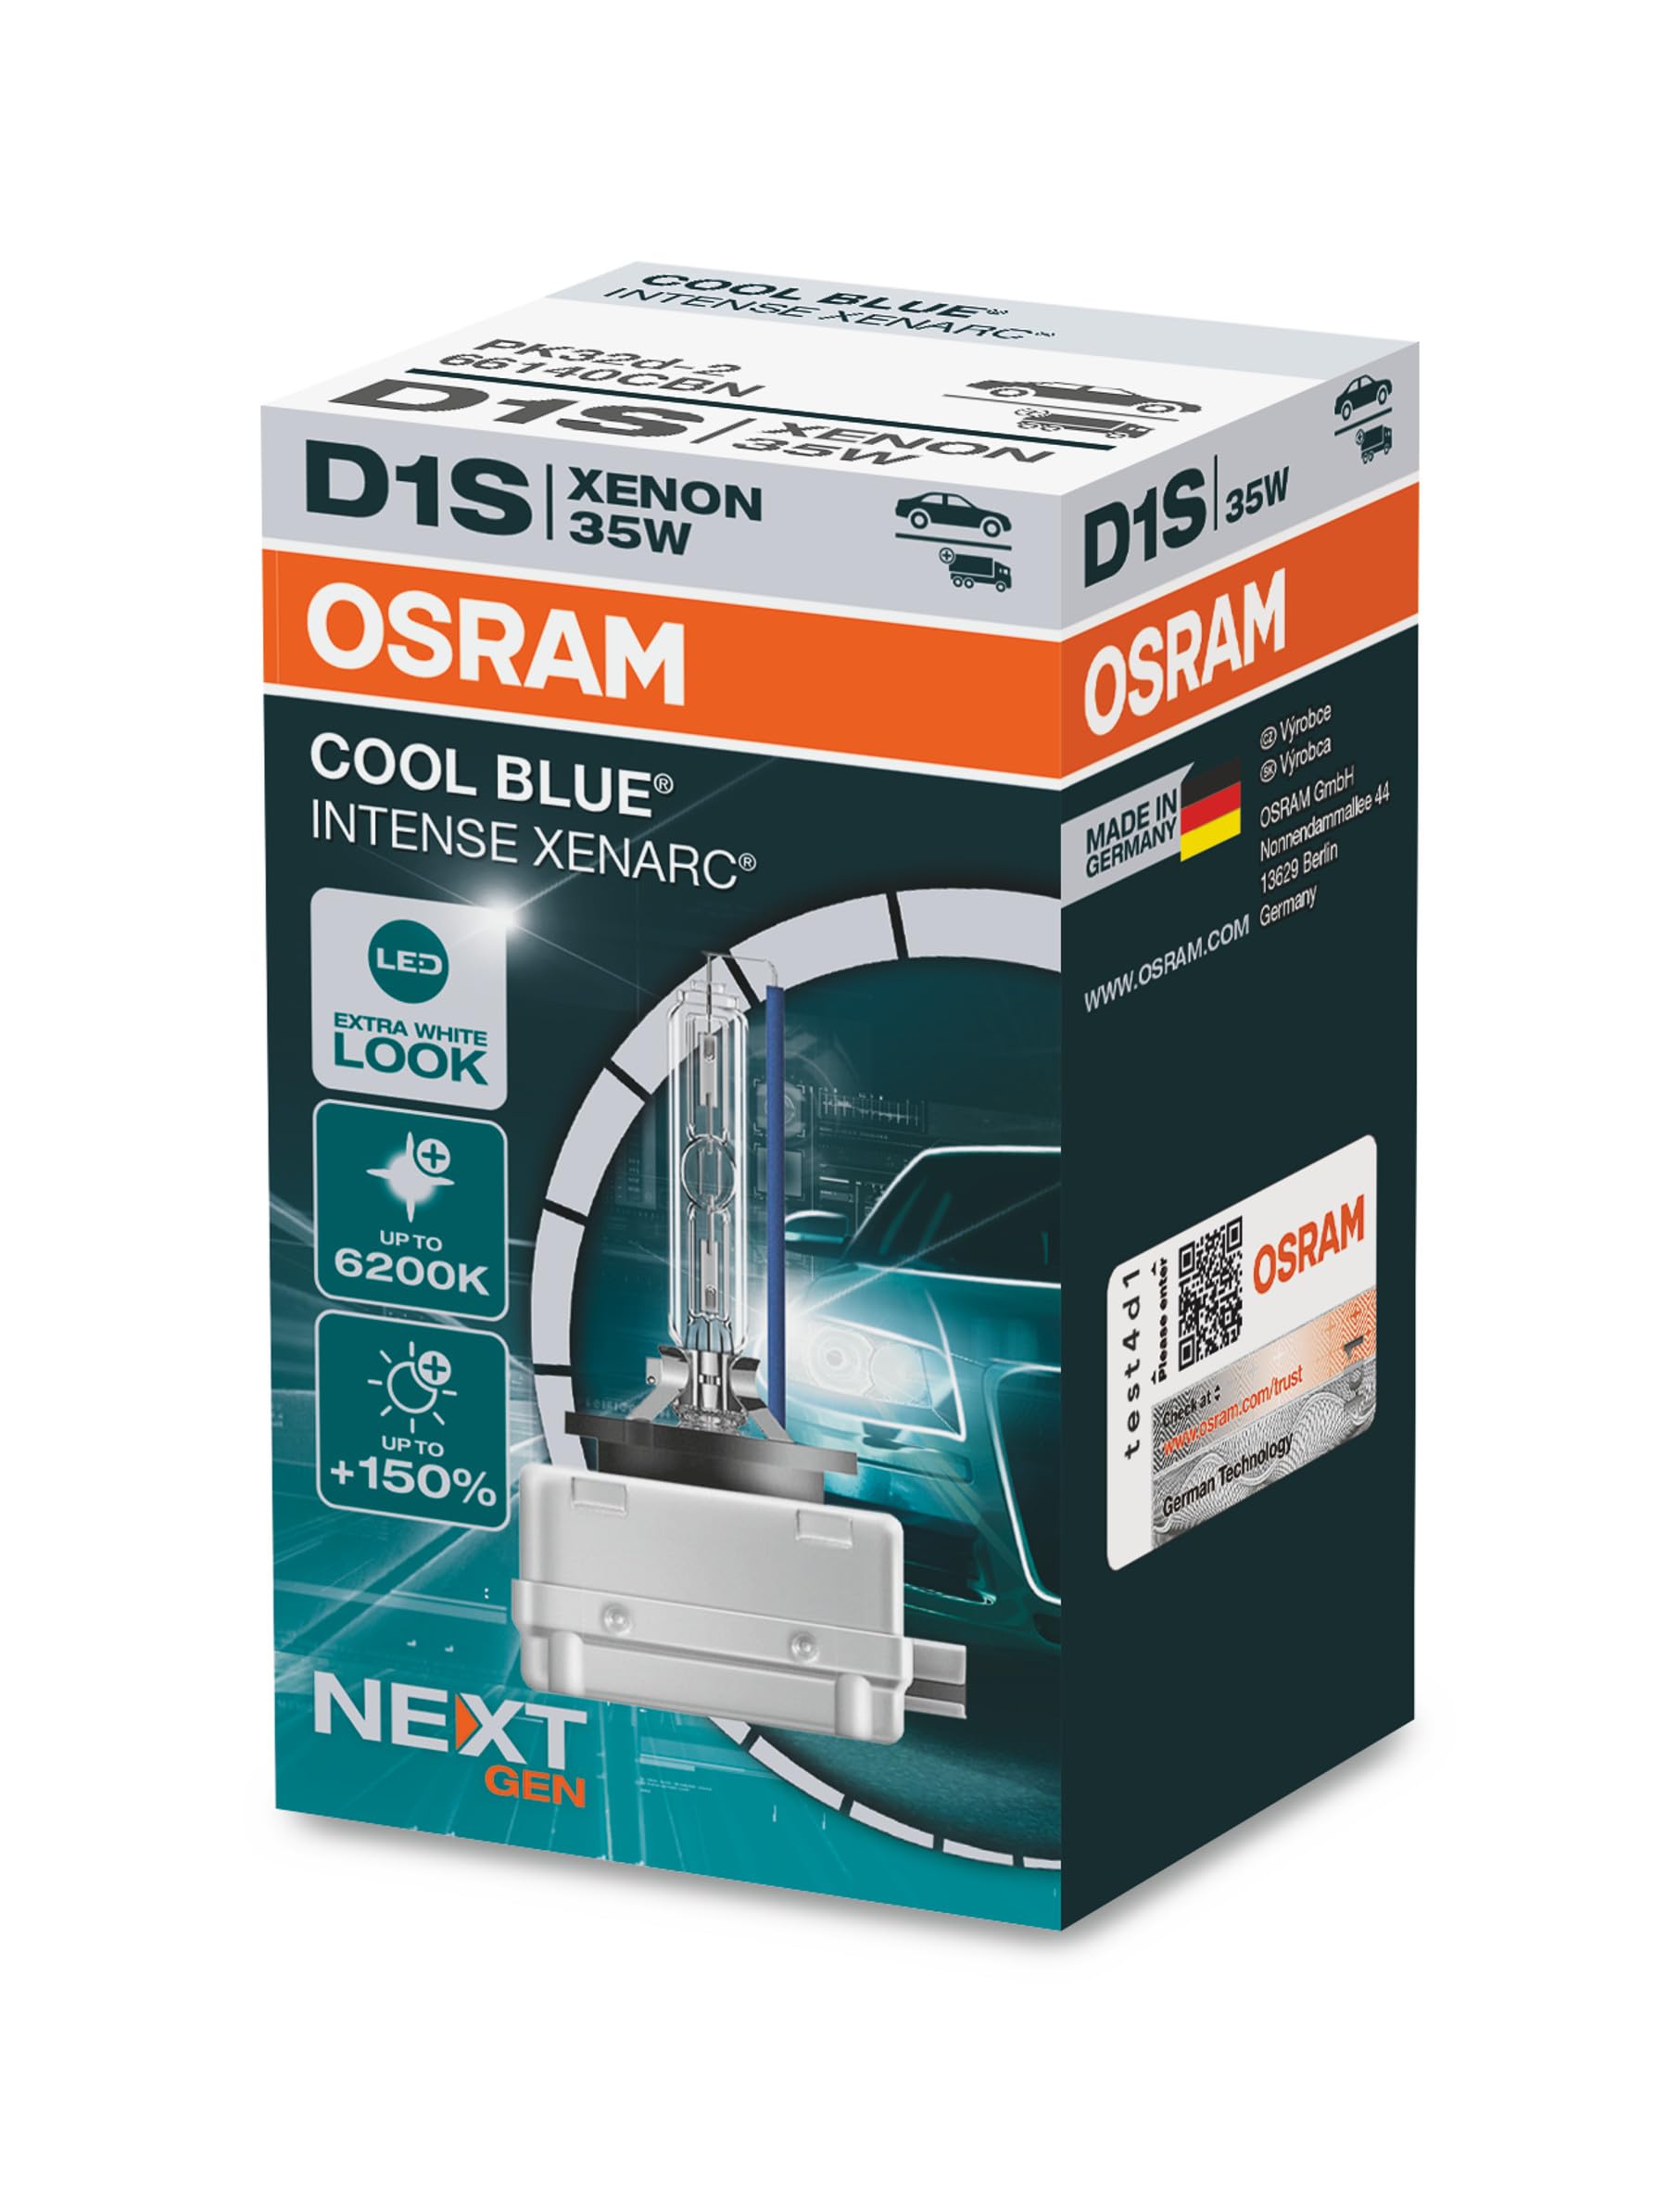 Osram XENARC Cool Blue Intense D1S, +150Prozent mehr Helligkeit, bis zu 6.200K, Xenon-Scheinwerferlampe, LED Look, Faltschachtel (1 Lampe), White, Carton folding Box von Osram